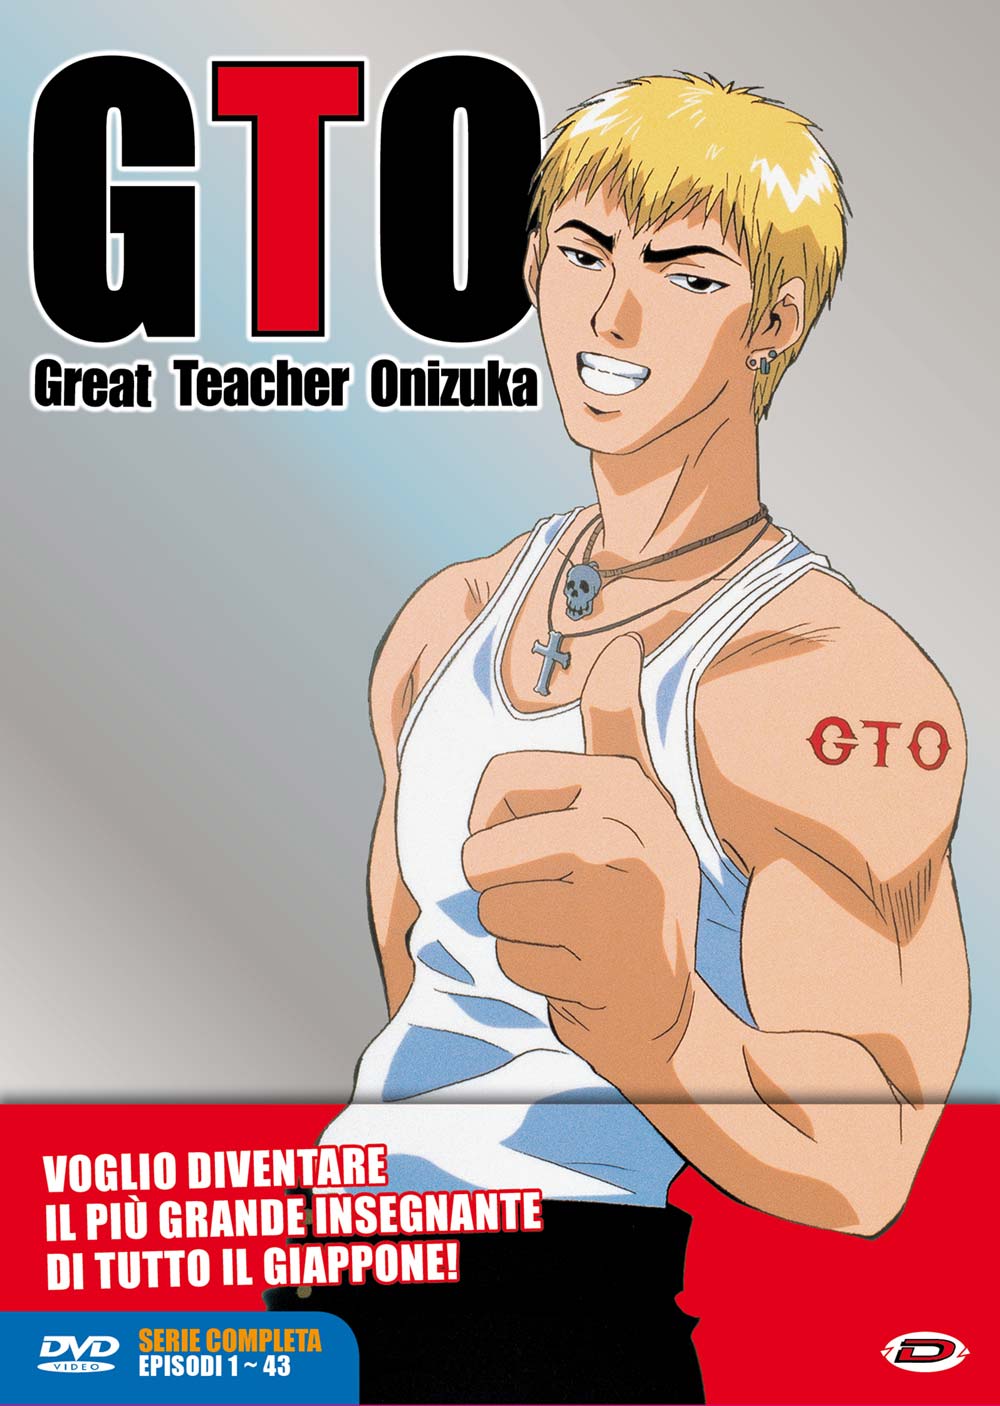 Dvd G.T.O. - Great Teacher Onizuka - The Complete Series (Eps 01-43) (6 Dvd) NUOVO SIGILLATO, EDIZIONE DEL 26/04/2017 SUBITO DISPONIBILE